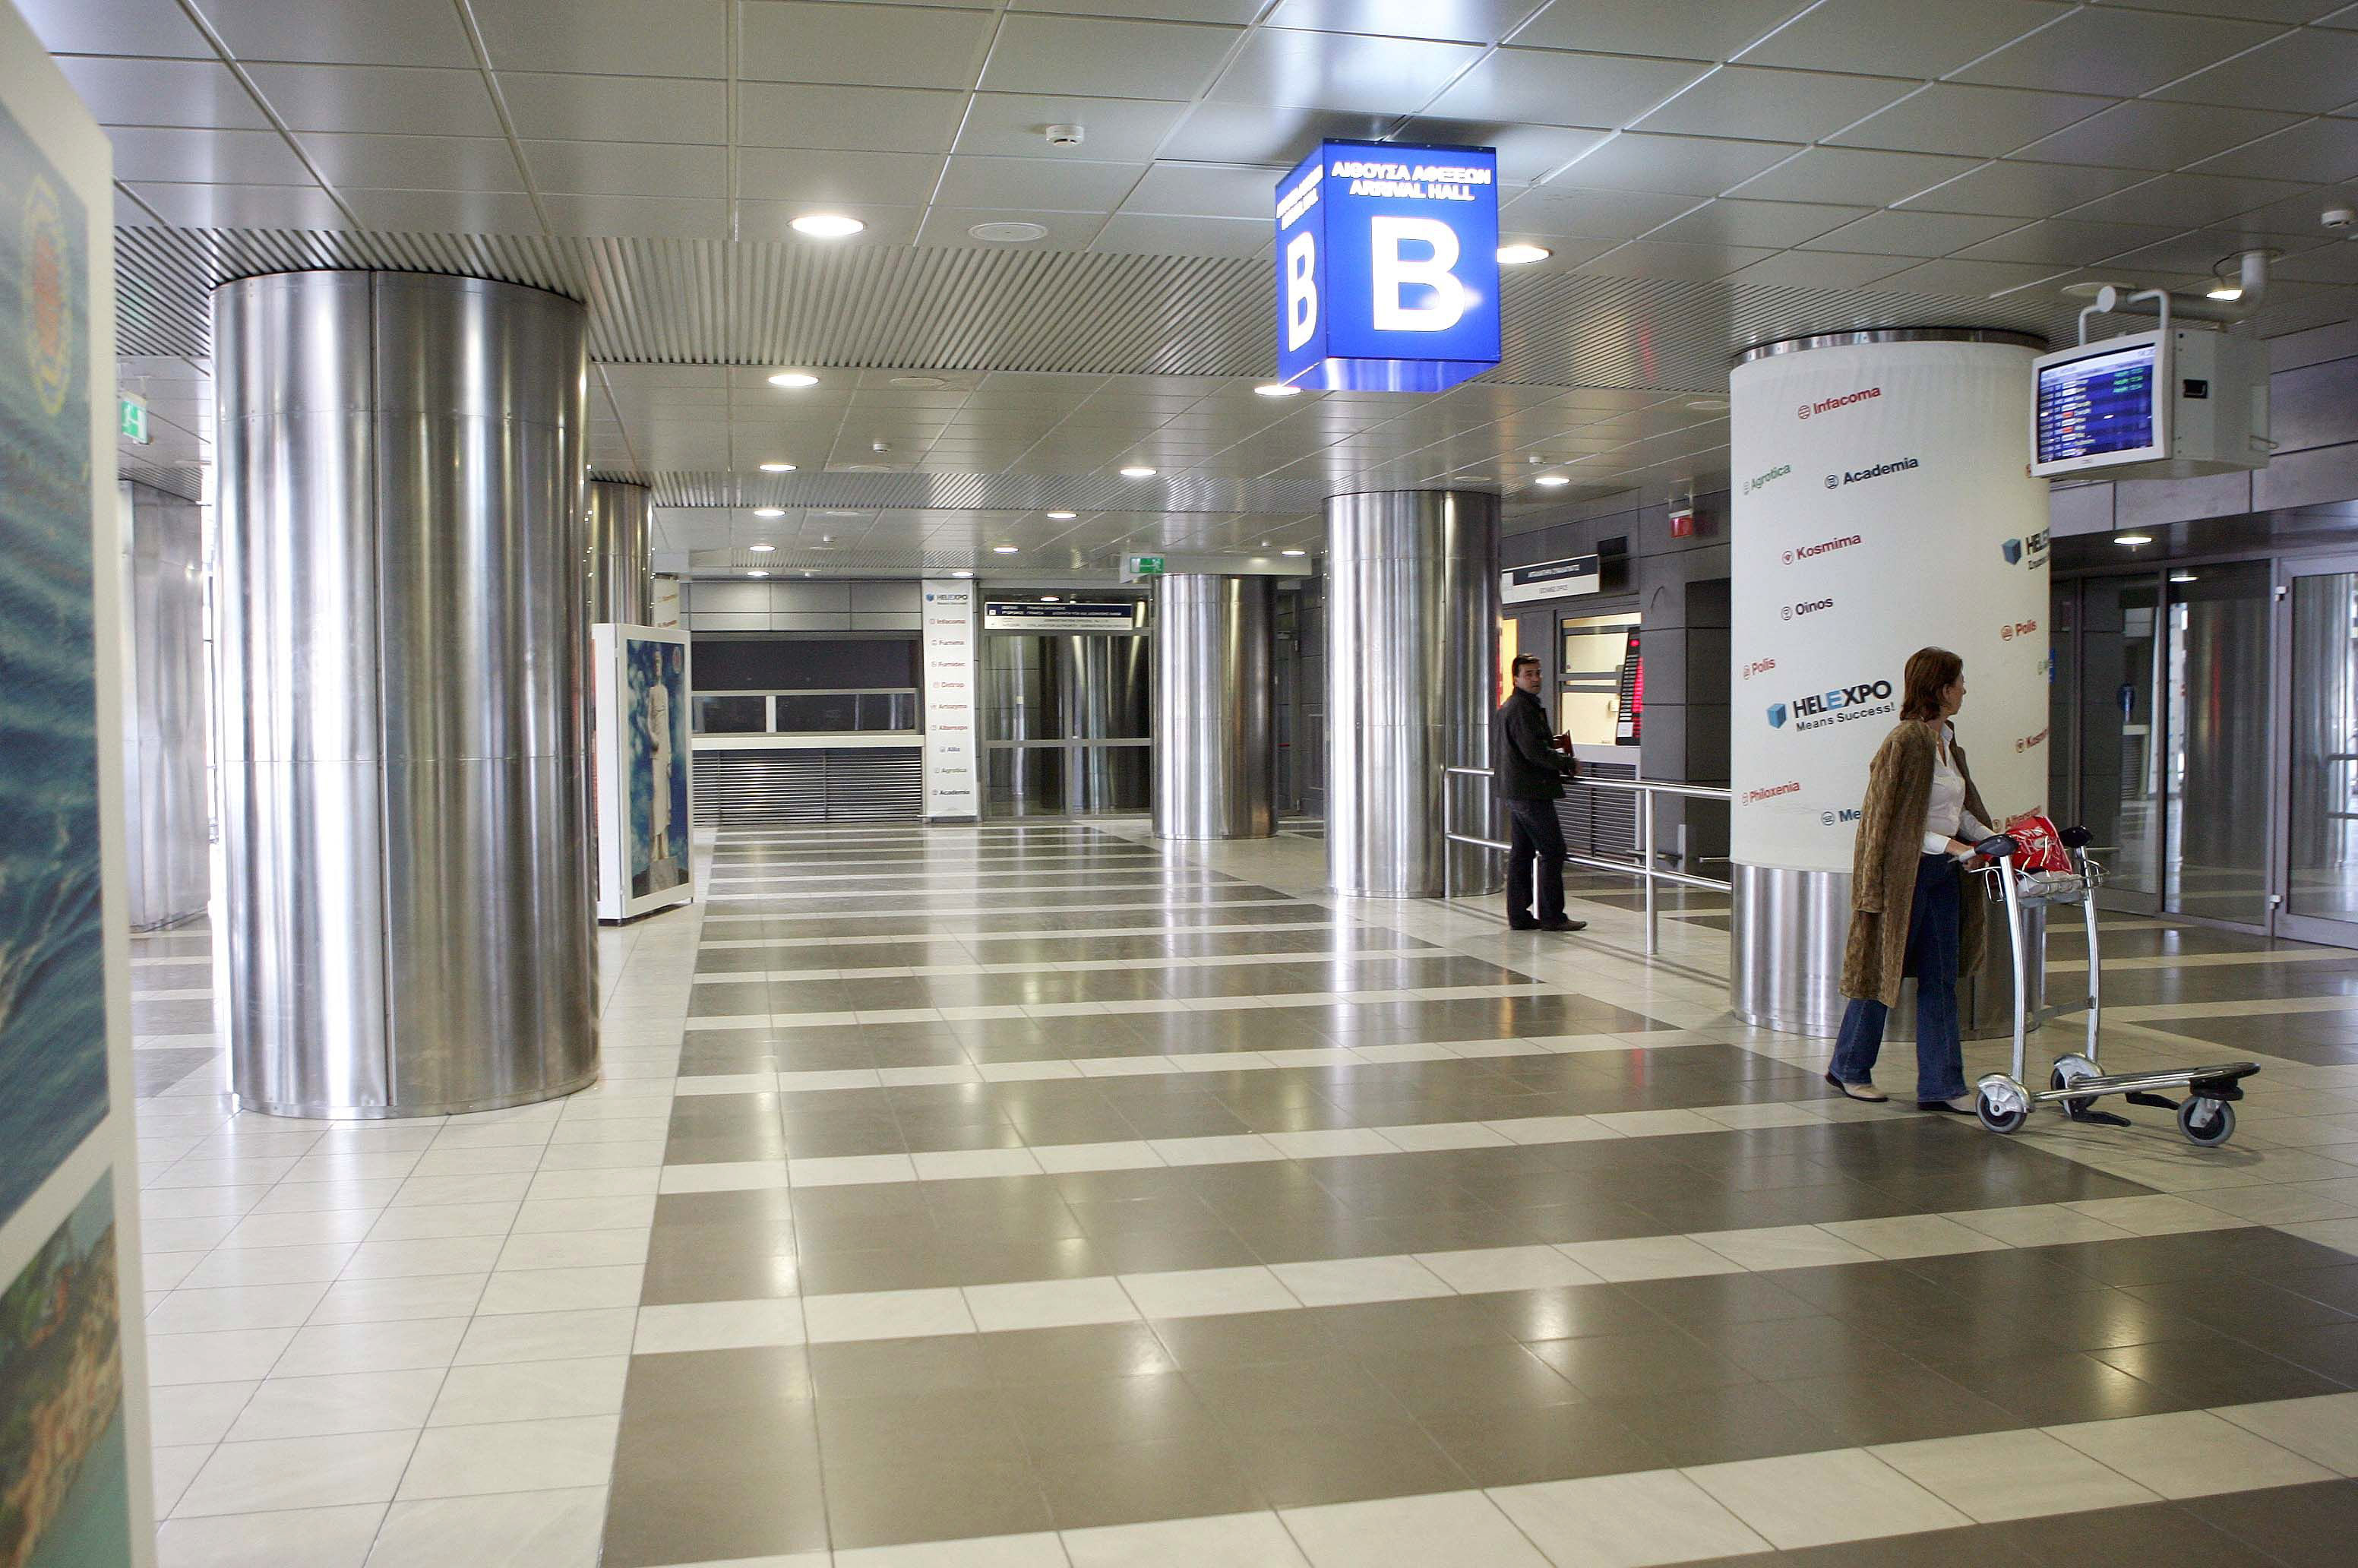 Αναγκαστική προσγείωση αεροσκάφους στο αεροδρόμιο «Μακεδονία»